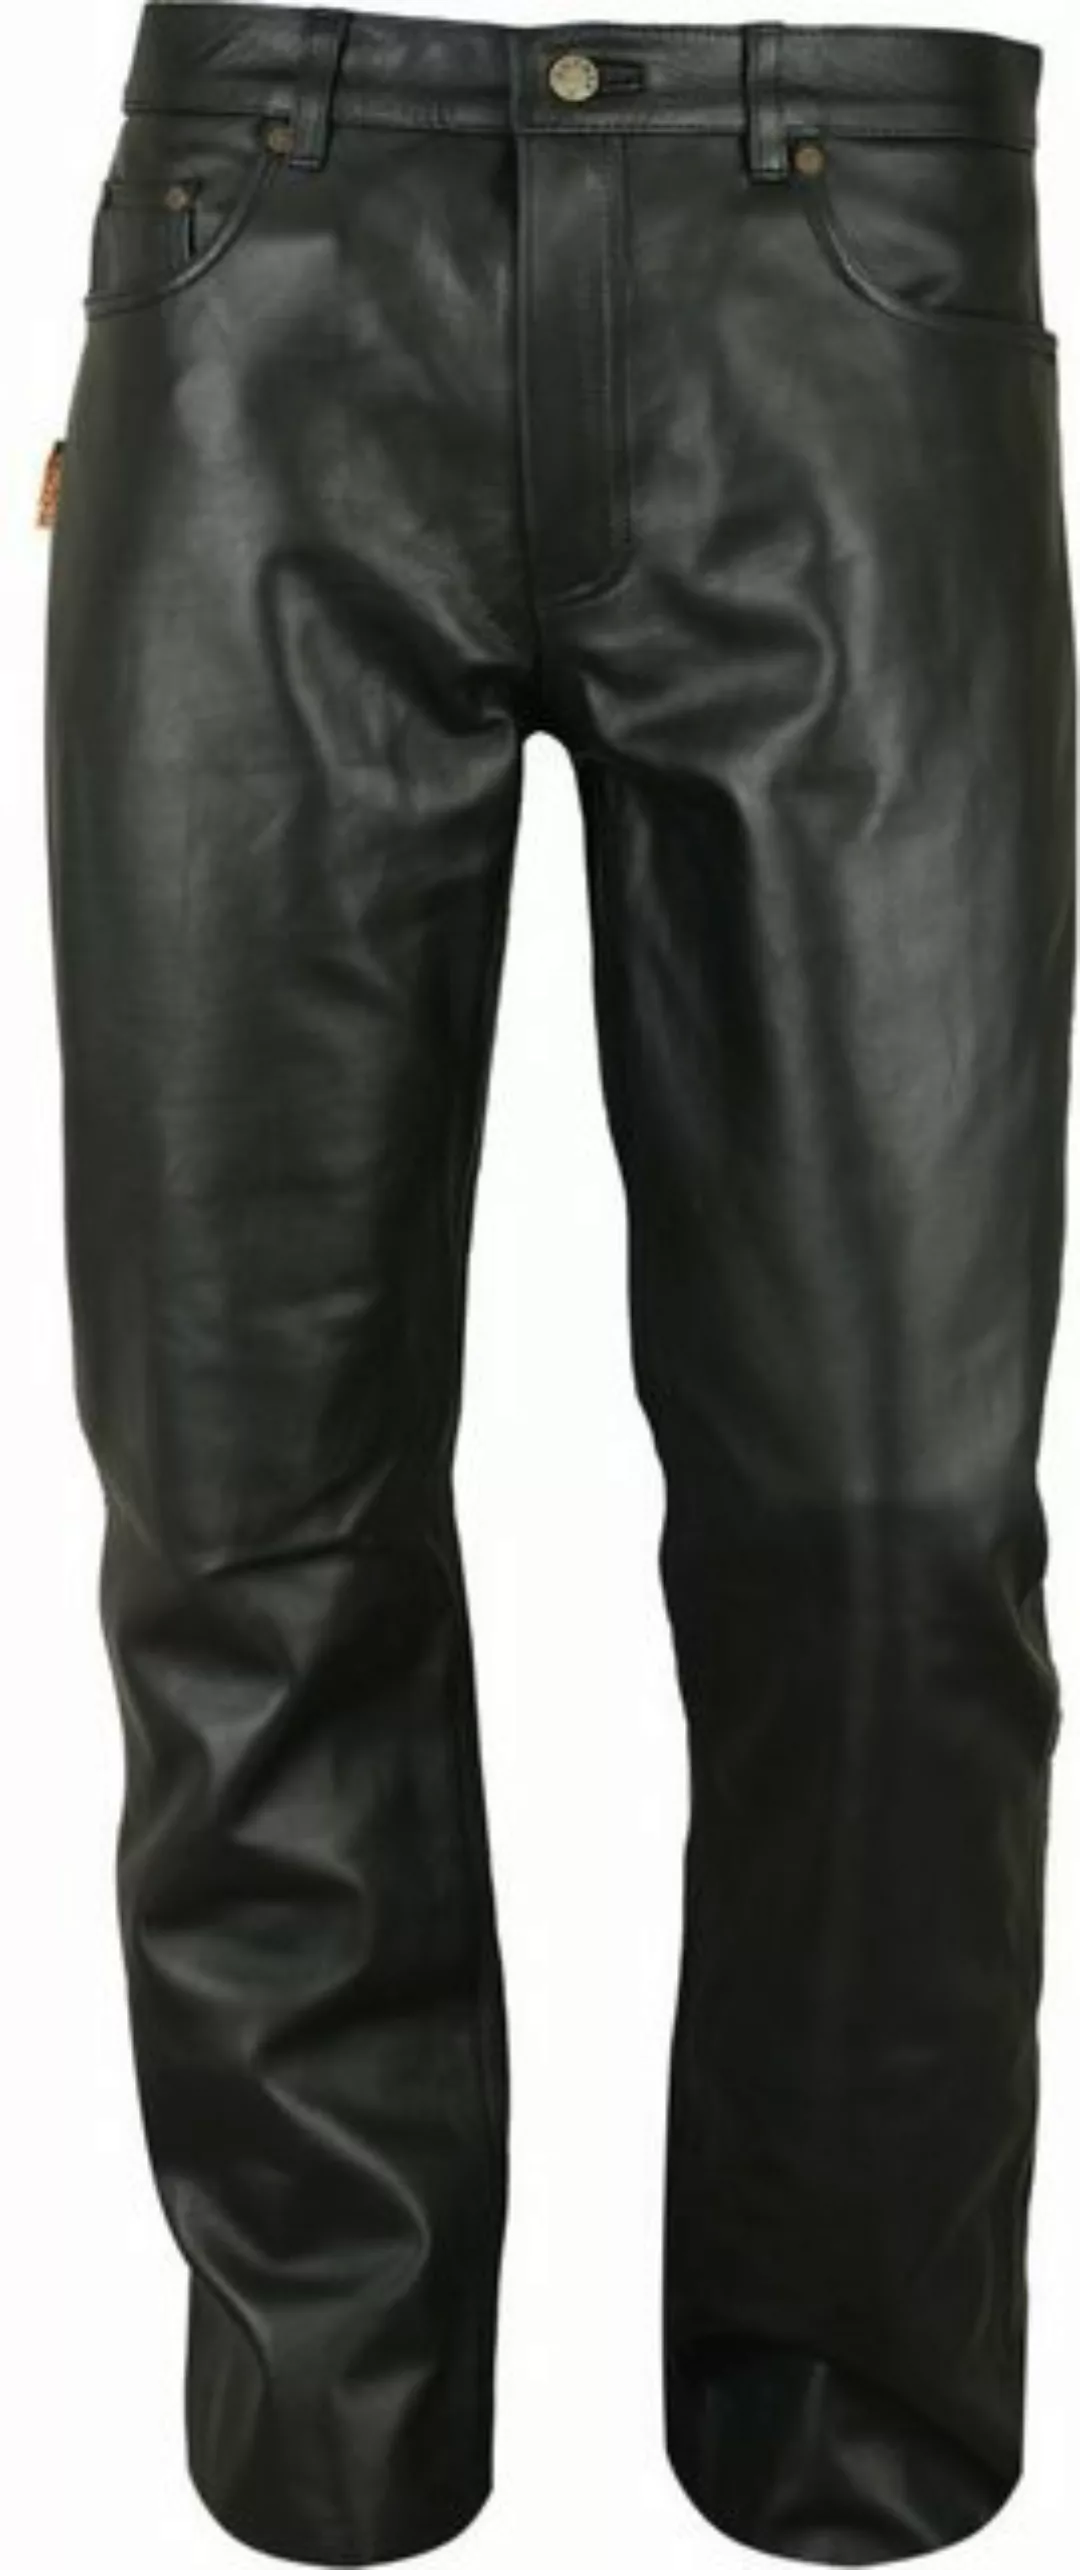 Fuente Leather Wears Lederhose Klassische Lederhose lang Herren - Lederjean günstig online kaufen